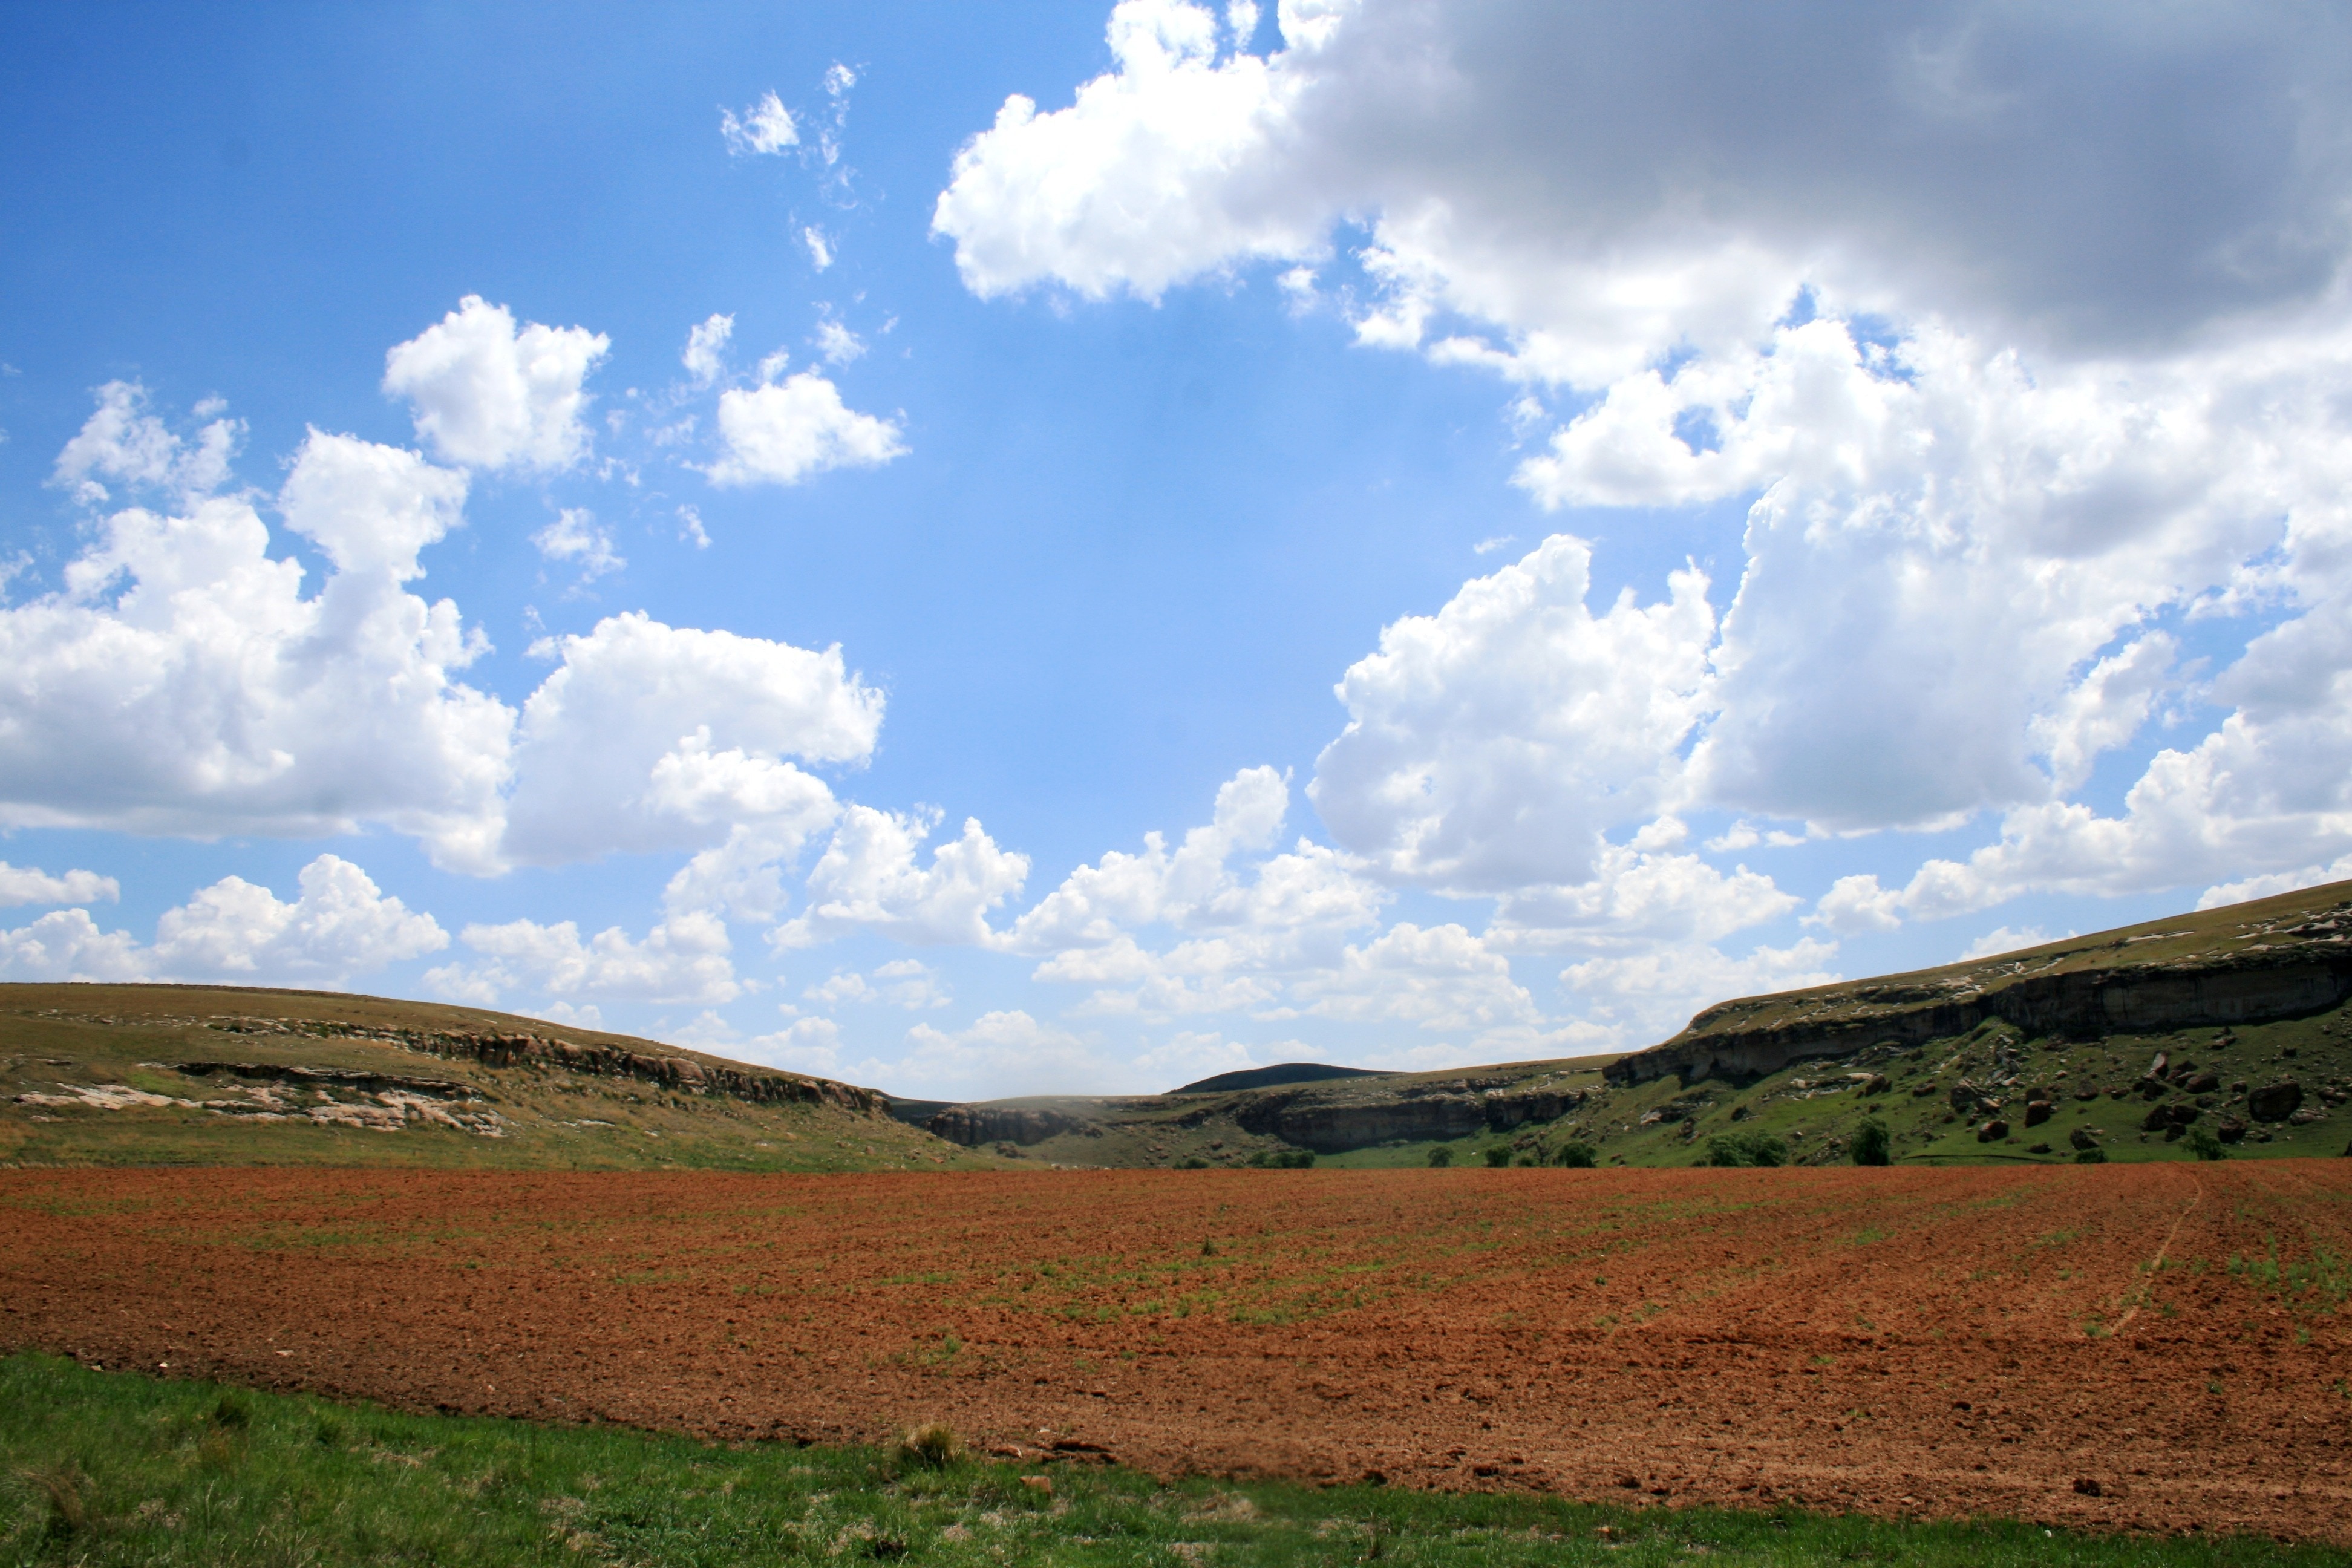 Farm, Field, Ploughed, Land, Tilled, cloud - sky, landscape